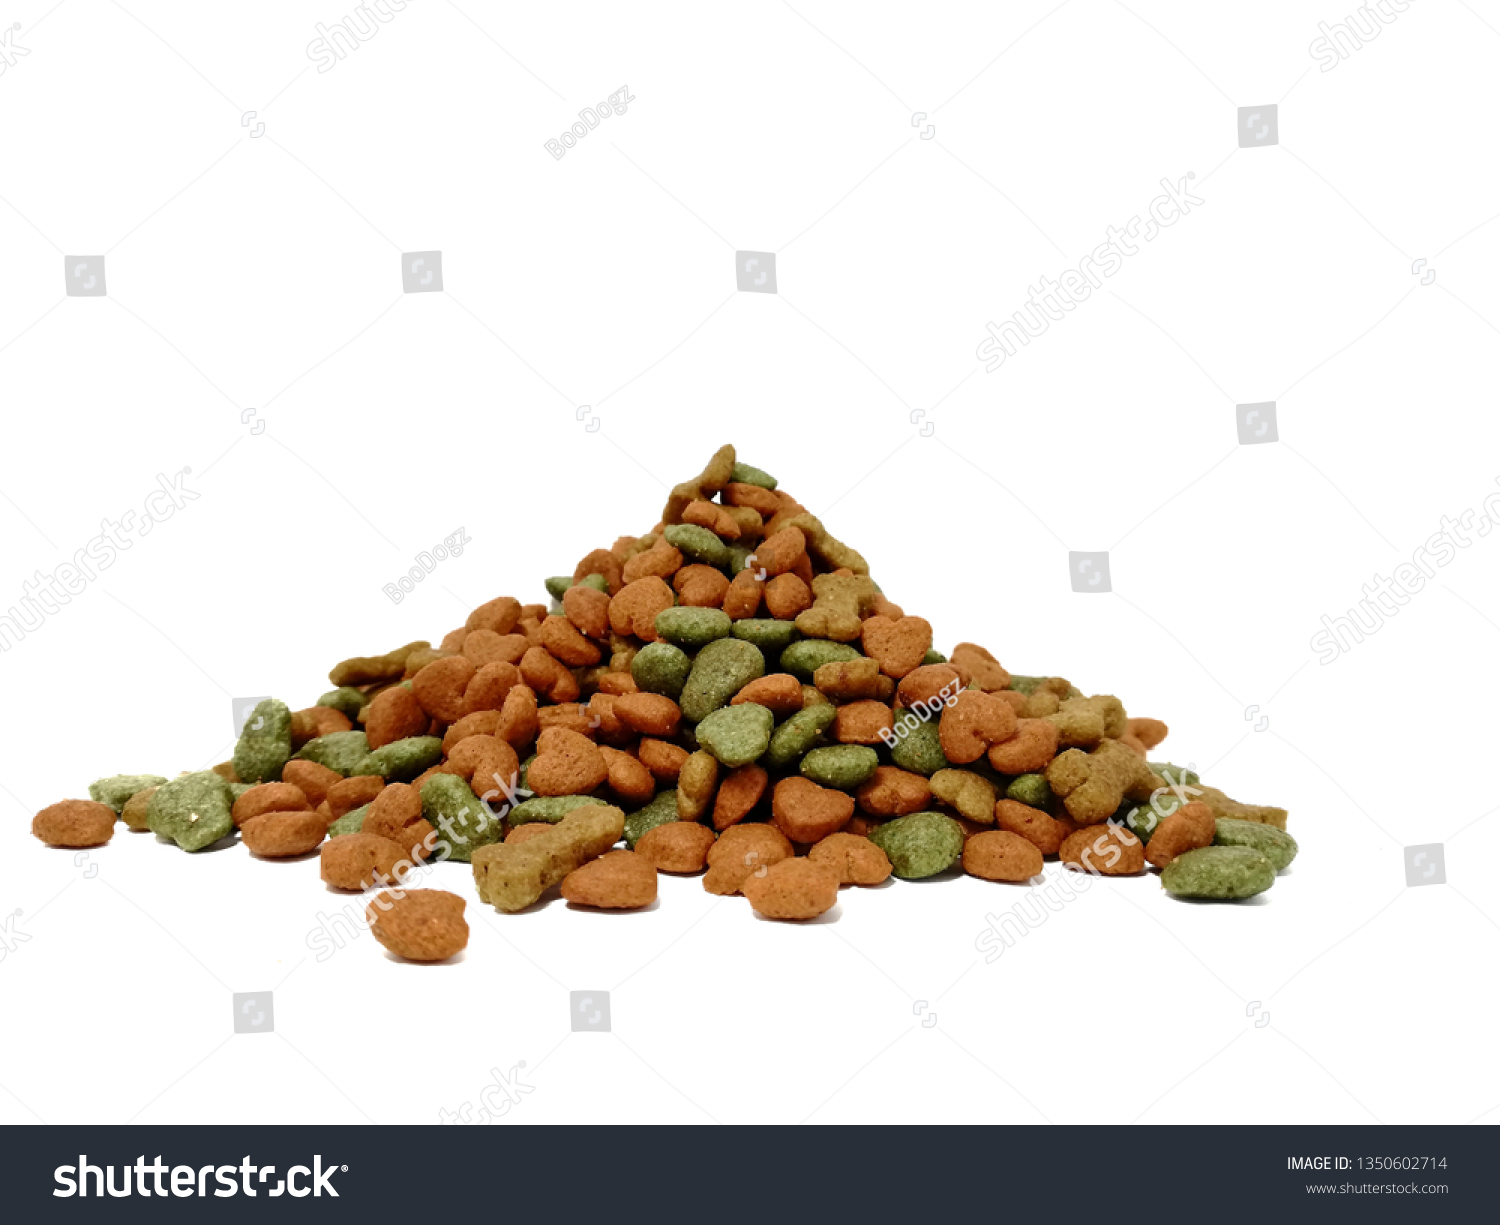 Dried dog food background
.Colorful dog food, bone shape, heart shape, vegetable shape #1350602714